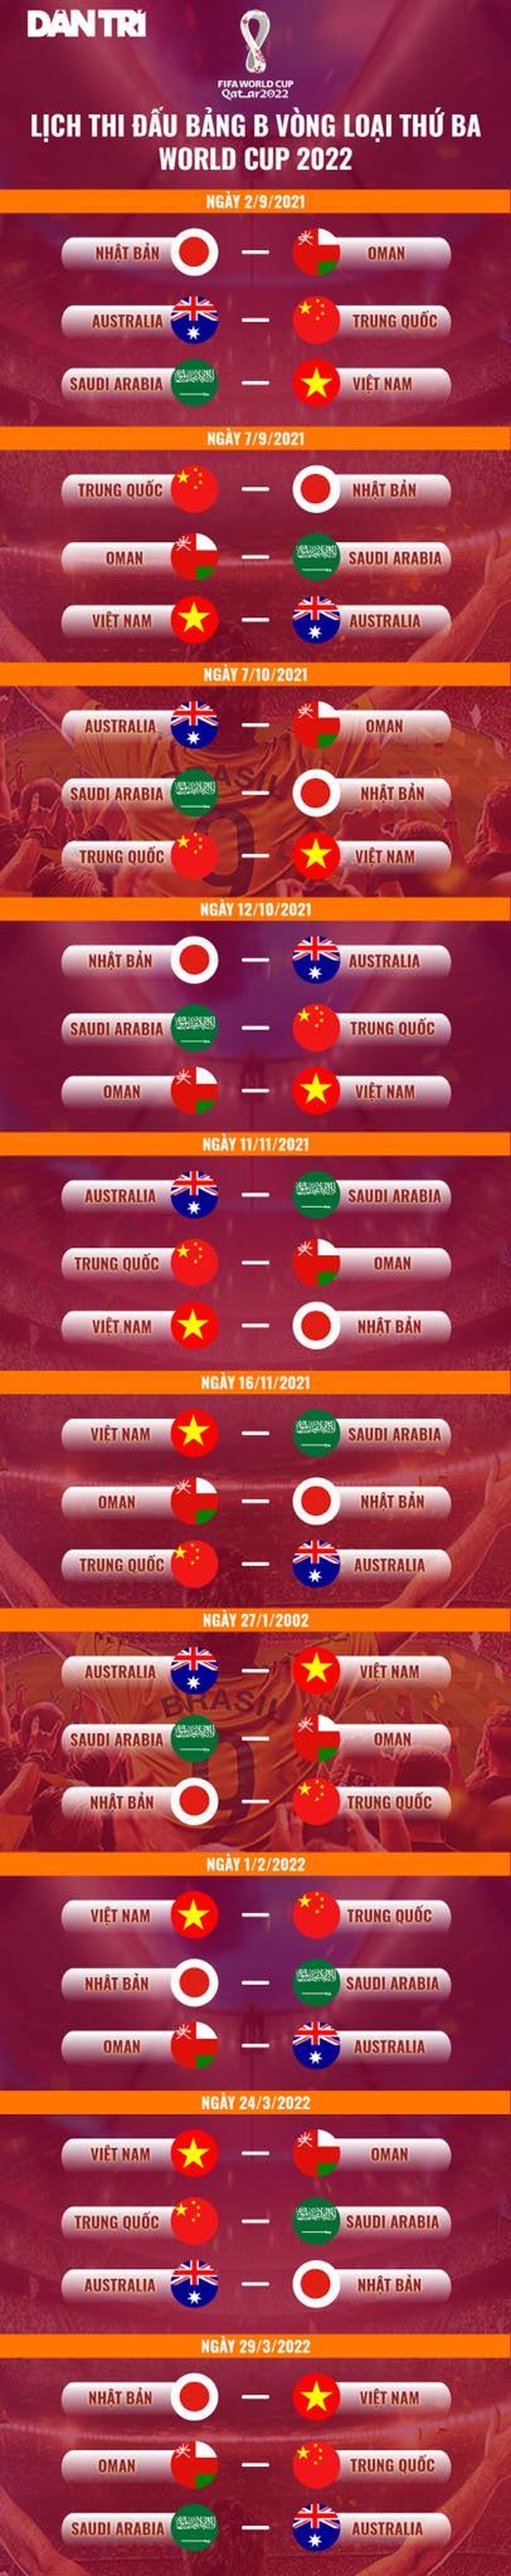 Chuyên gia Trung Quốc nói gì khi nằm chung bảng với đội tuyển Việt Nam? - 4